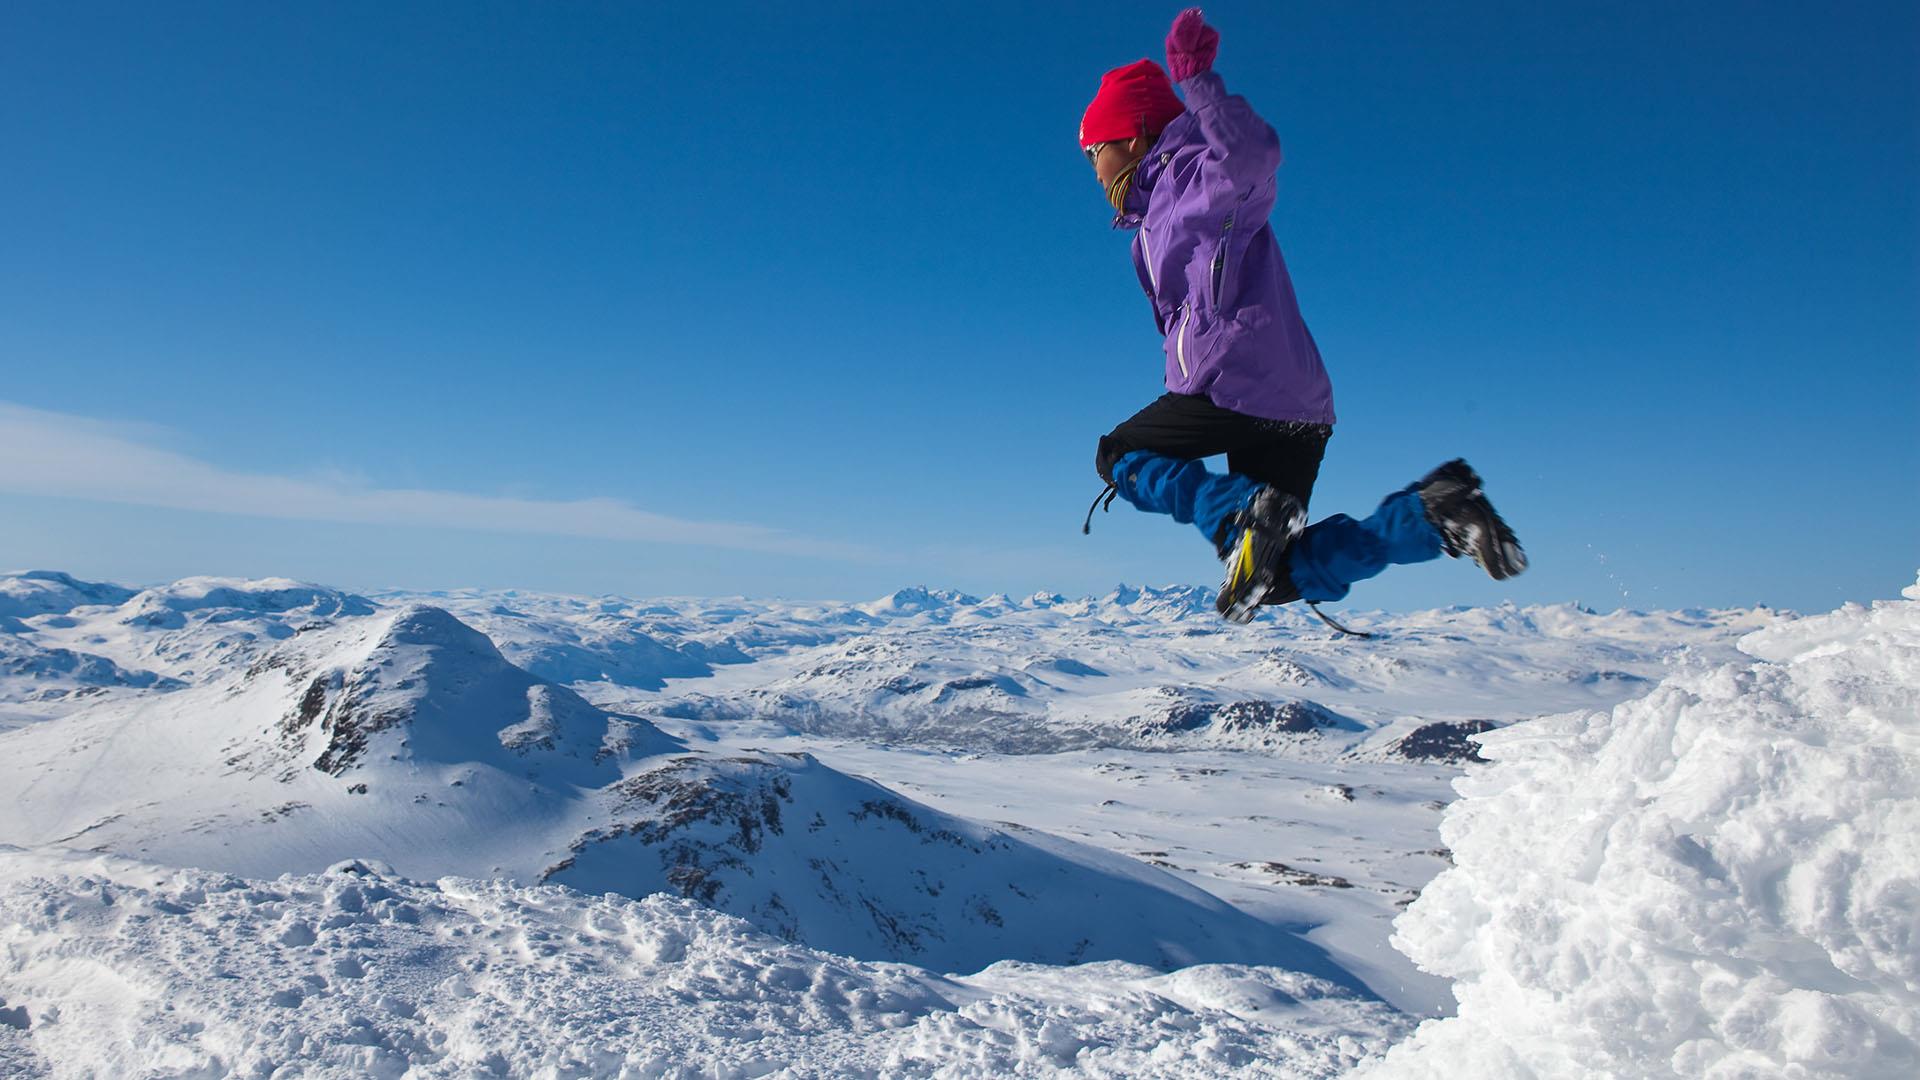 En jente i skiklær hopper høyt i lufta på toppen av et fjell. Unter hennes føtter ligger et snødekt fjellandskap så langt øyet kan se. Blå, skyfri himmel.